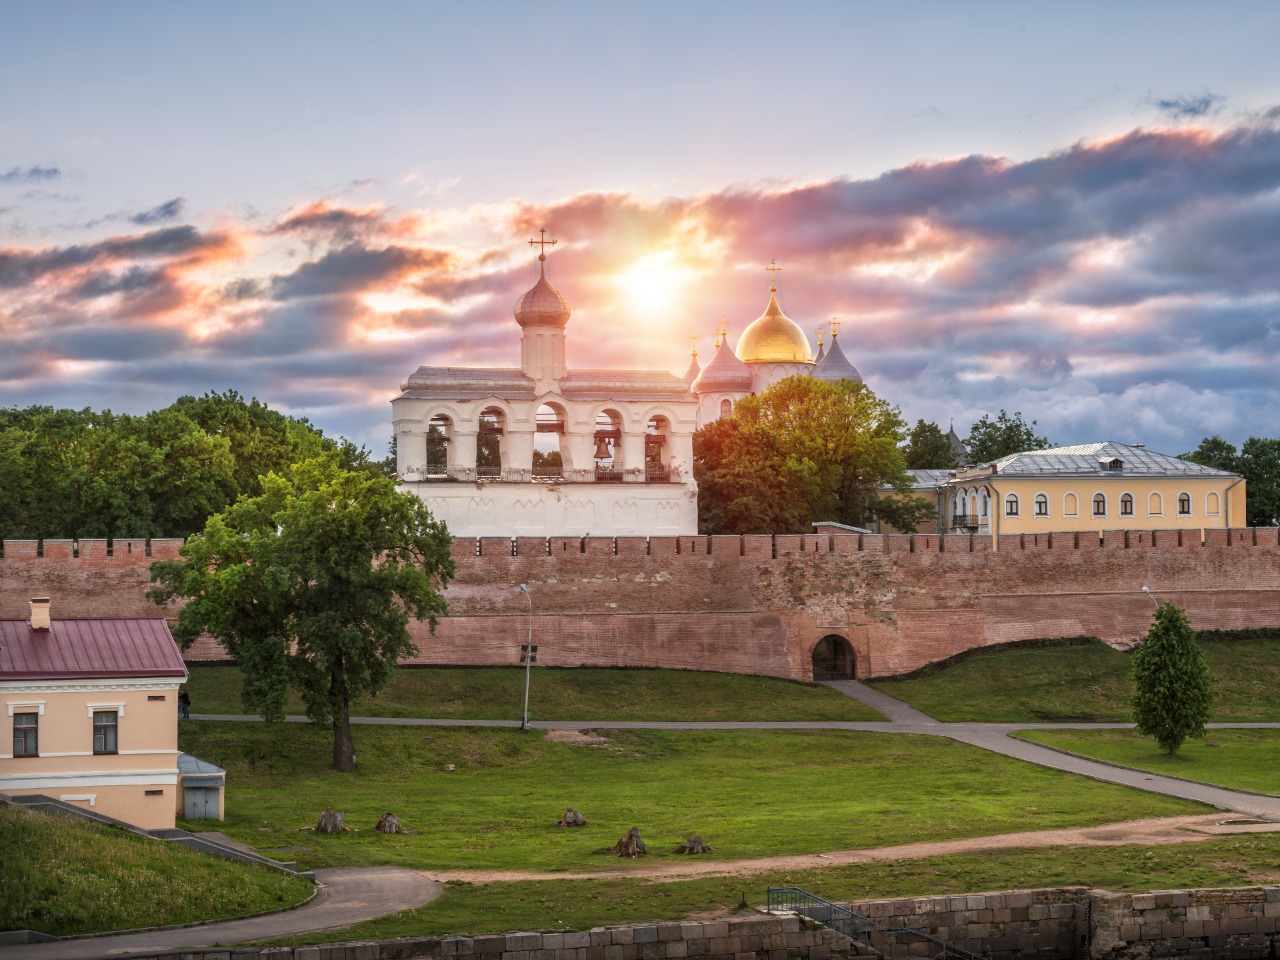 Тайны Великого Новгорода | Цена 4500₽, отзывы, описание экскурсии